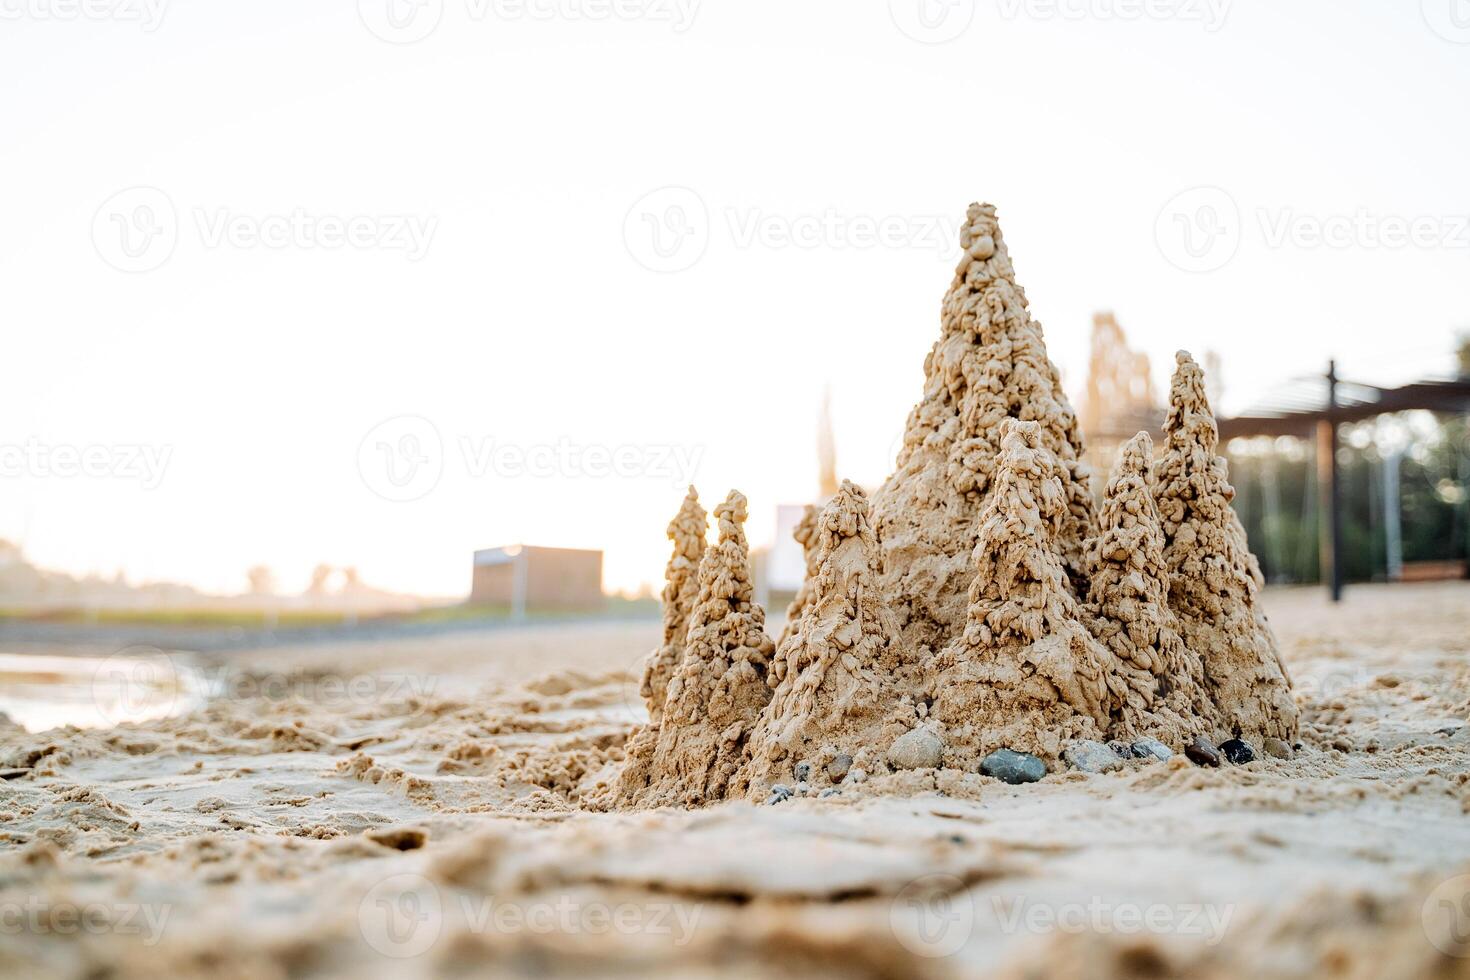 zand kasteel Aan de zee strand, kinderen pret naar Speel met nat zand, zand torens tegen de achtergrond van de zon, ochtend- dageraad Aan de zee, kust vakantie foto